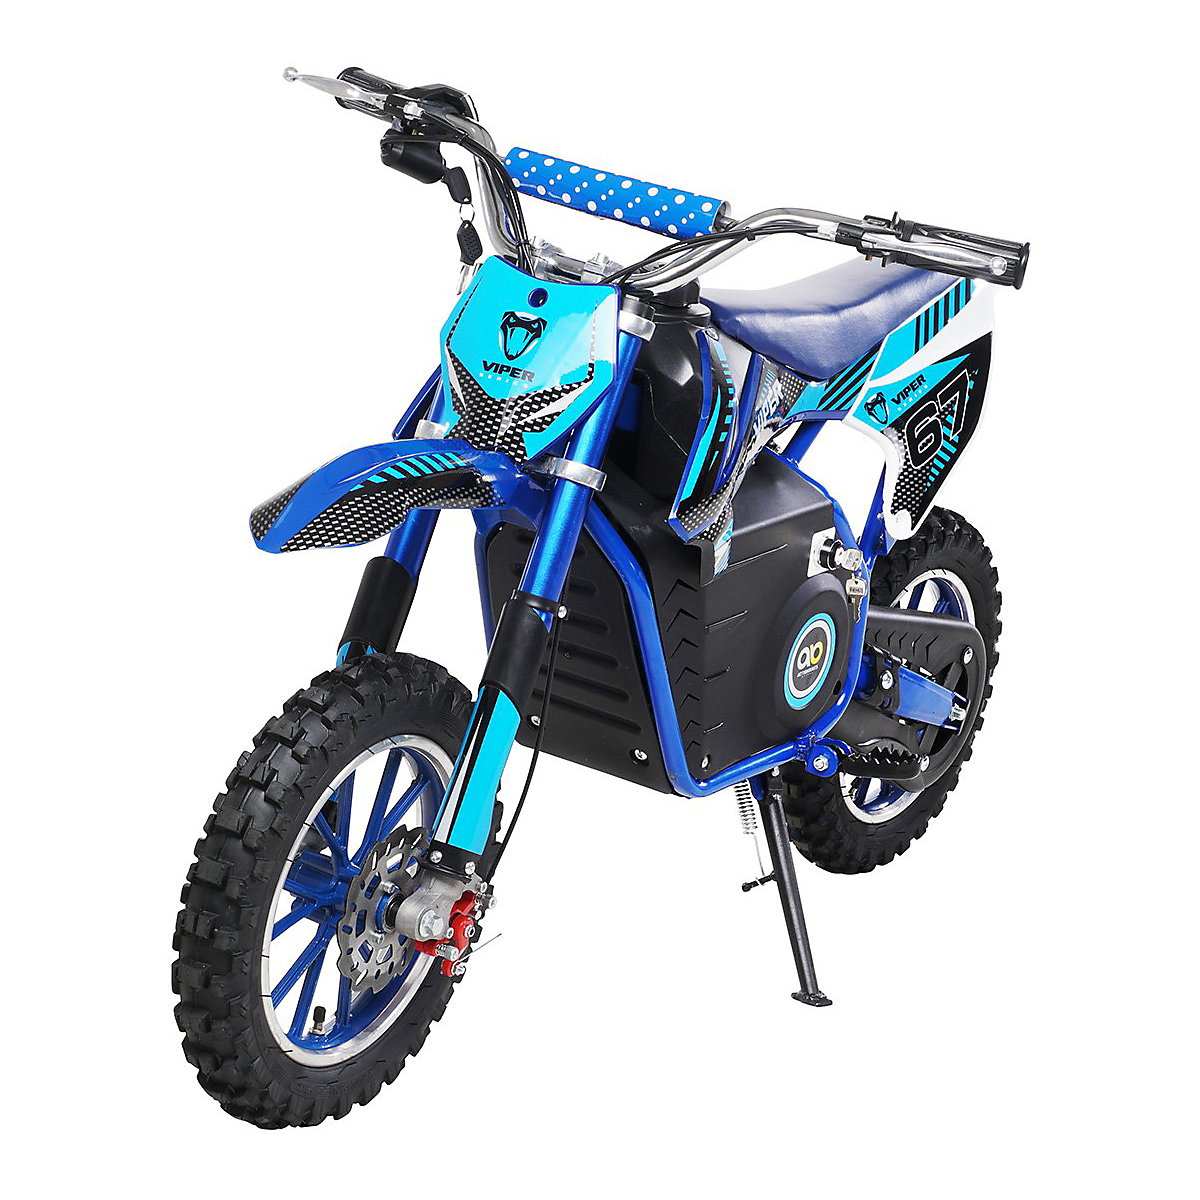 Actionbikes Motors Kinder Elektromotorrad Crossbike Viper 1000 Watt 36 Volt Elektromotor